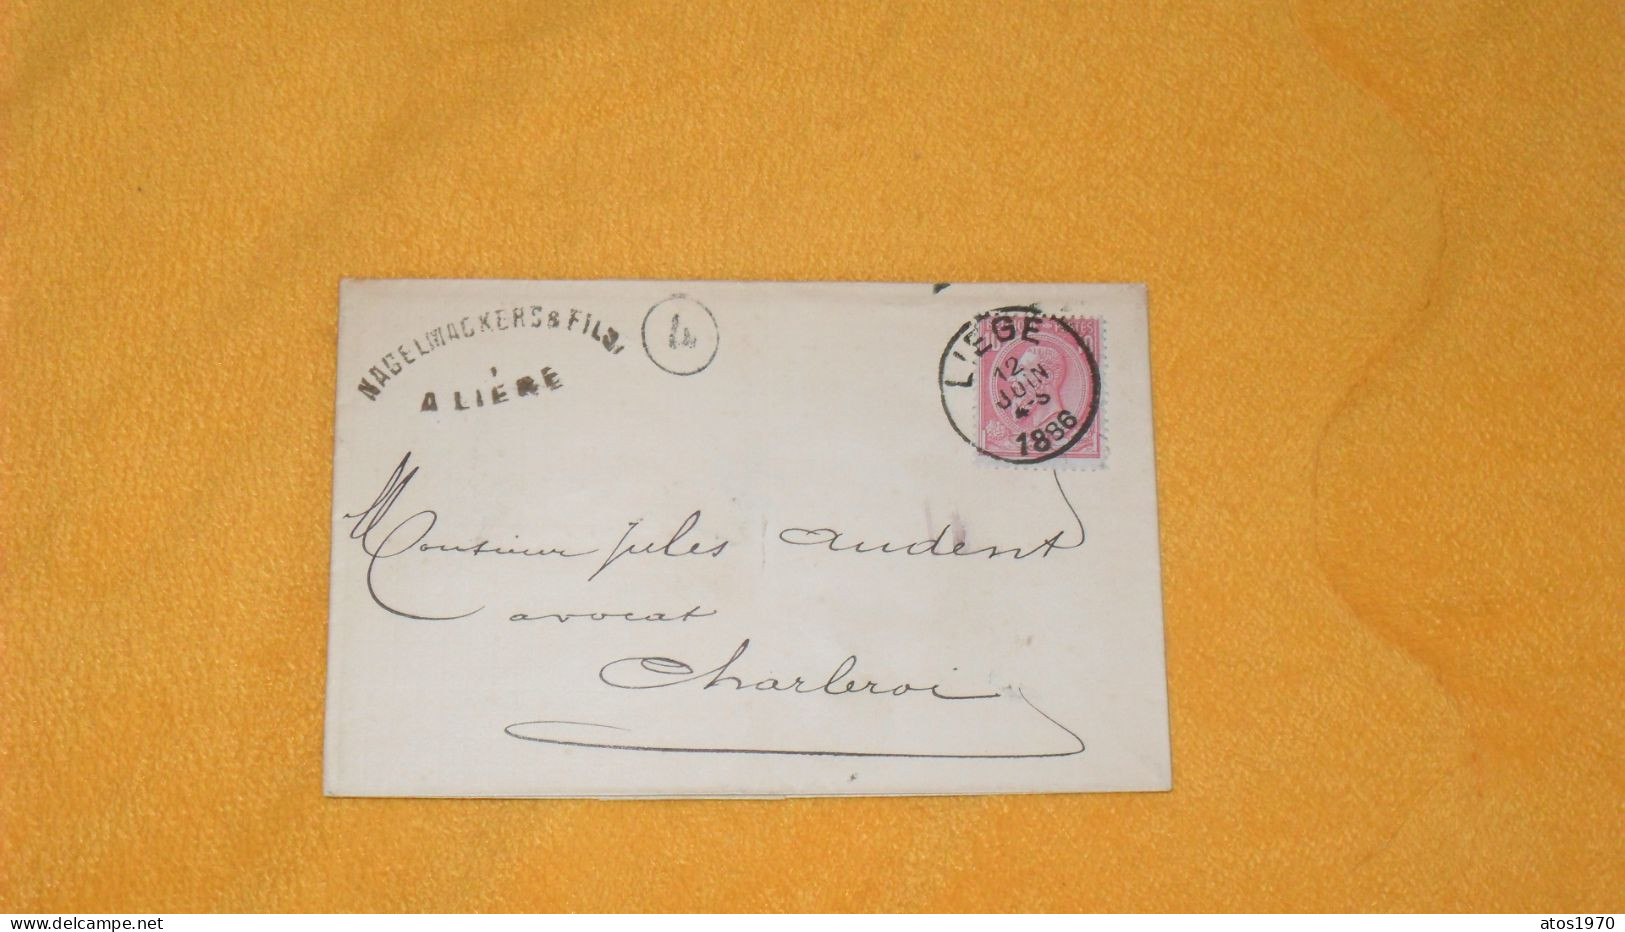 LETTRE LSC ANCIENNE DE 1886.../ NAGELMACKERS & FILS A LIEGE..CACHETS LIEGE POUR CHARLEROI + TIMBRE... - 1884-1891 Leopold II